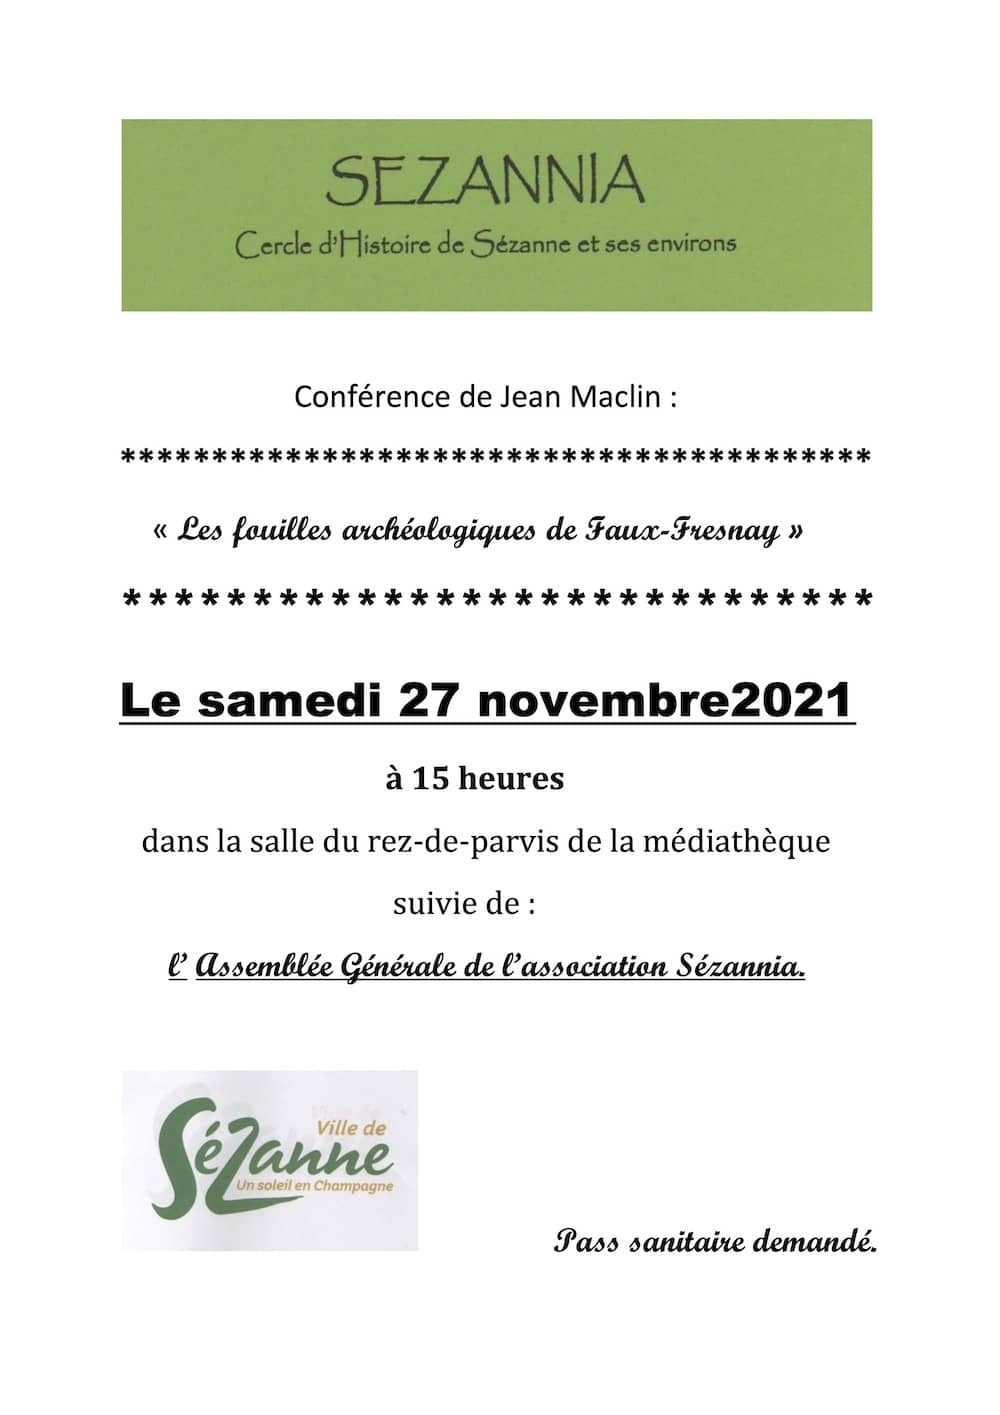 Conférence de Jean Maclin novembre 2021